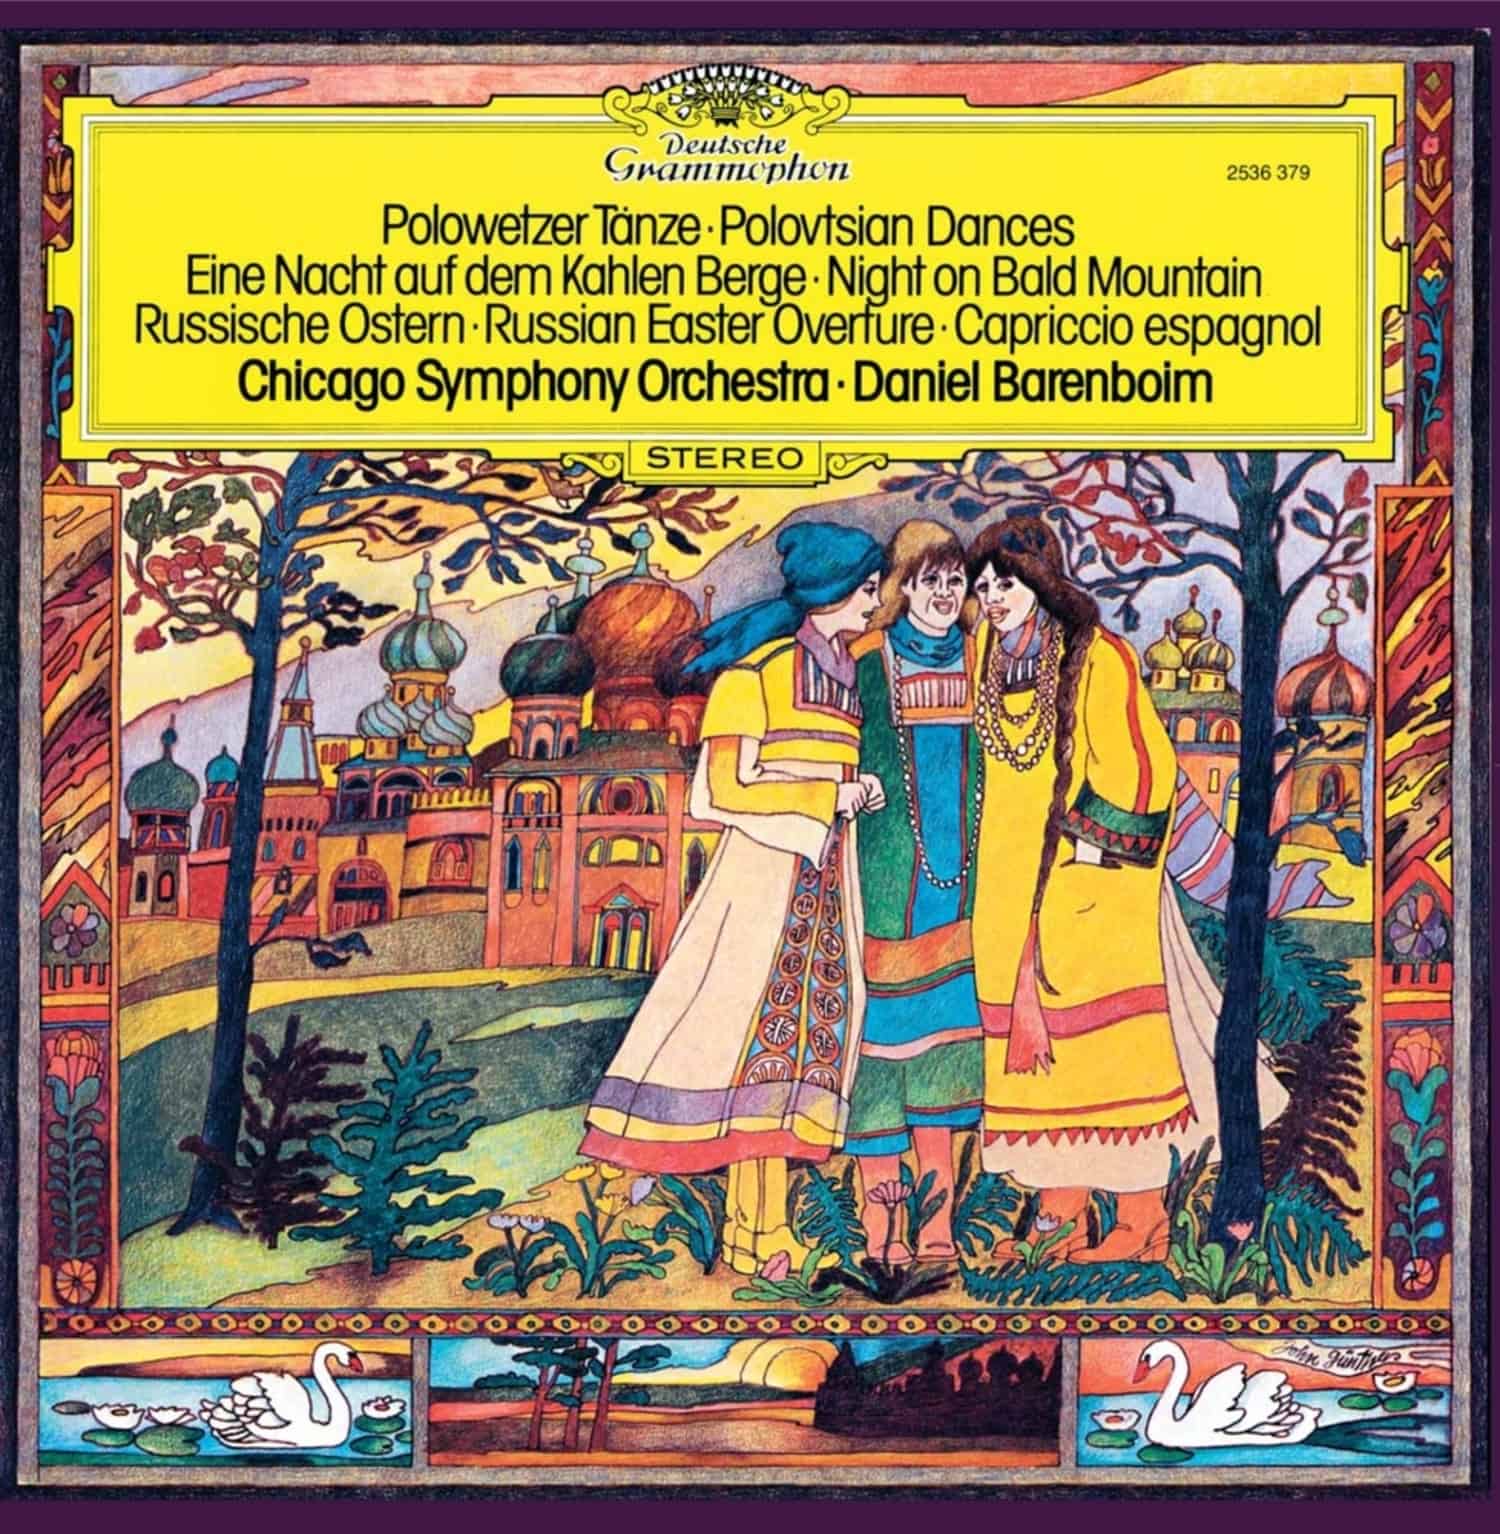 Chicago Symphony Orchestra / Daniel Barenboim - POLOWETZER TAENZE-EINE NACHT AUF DEM KAHLEN BERGE 